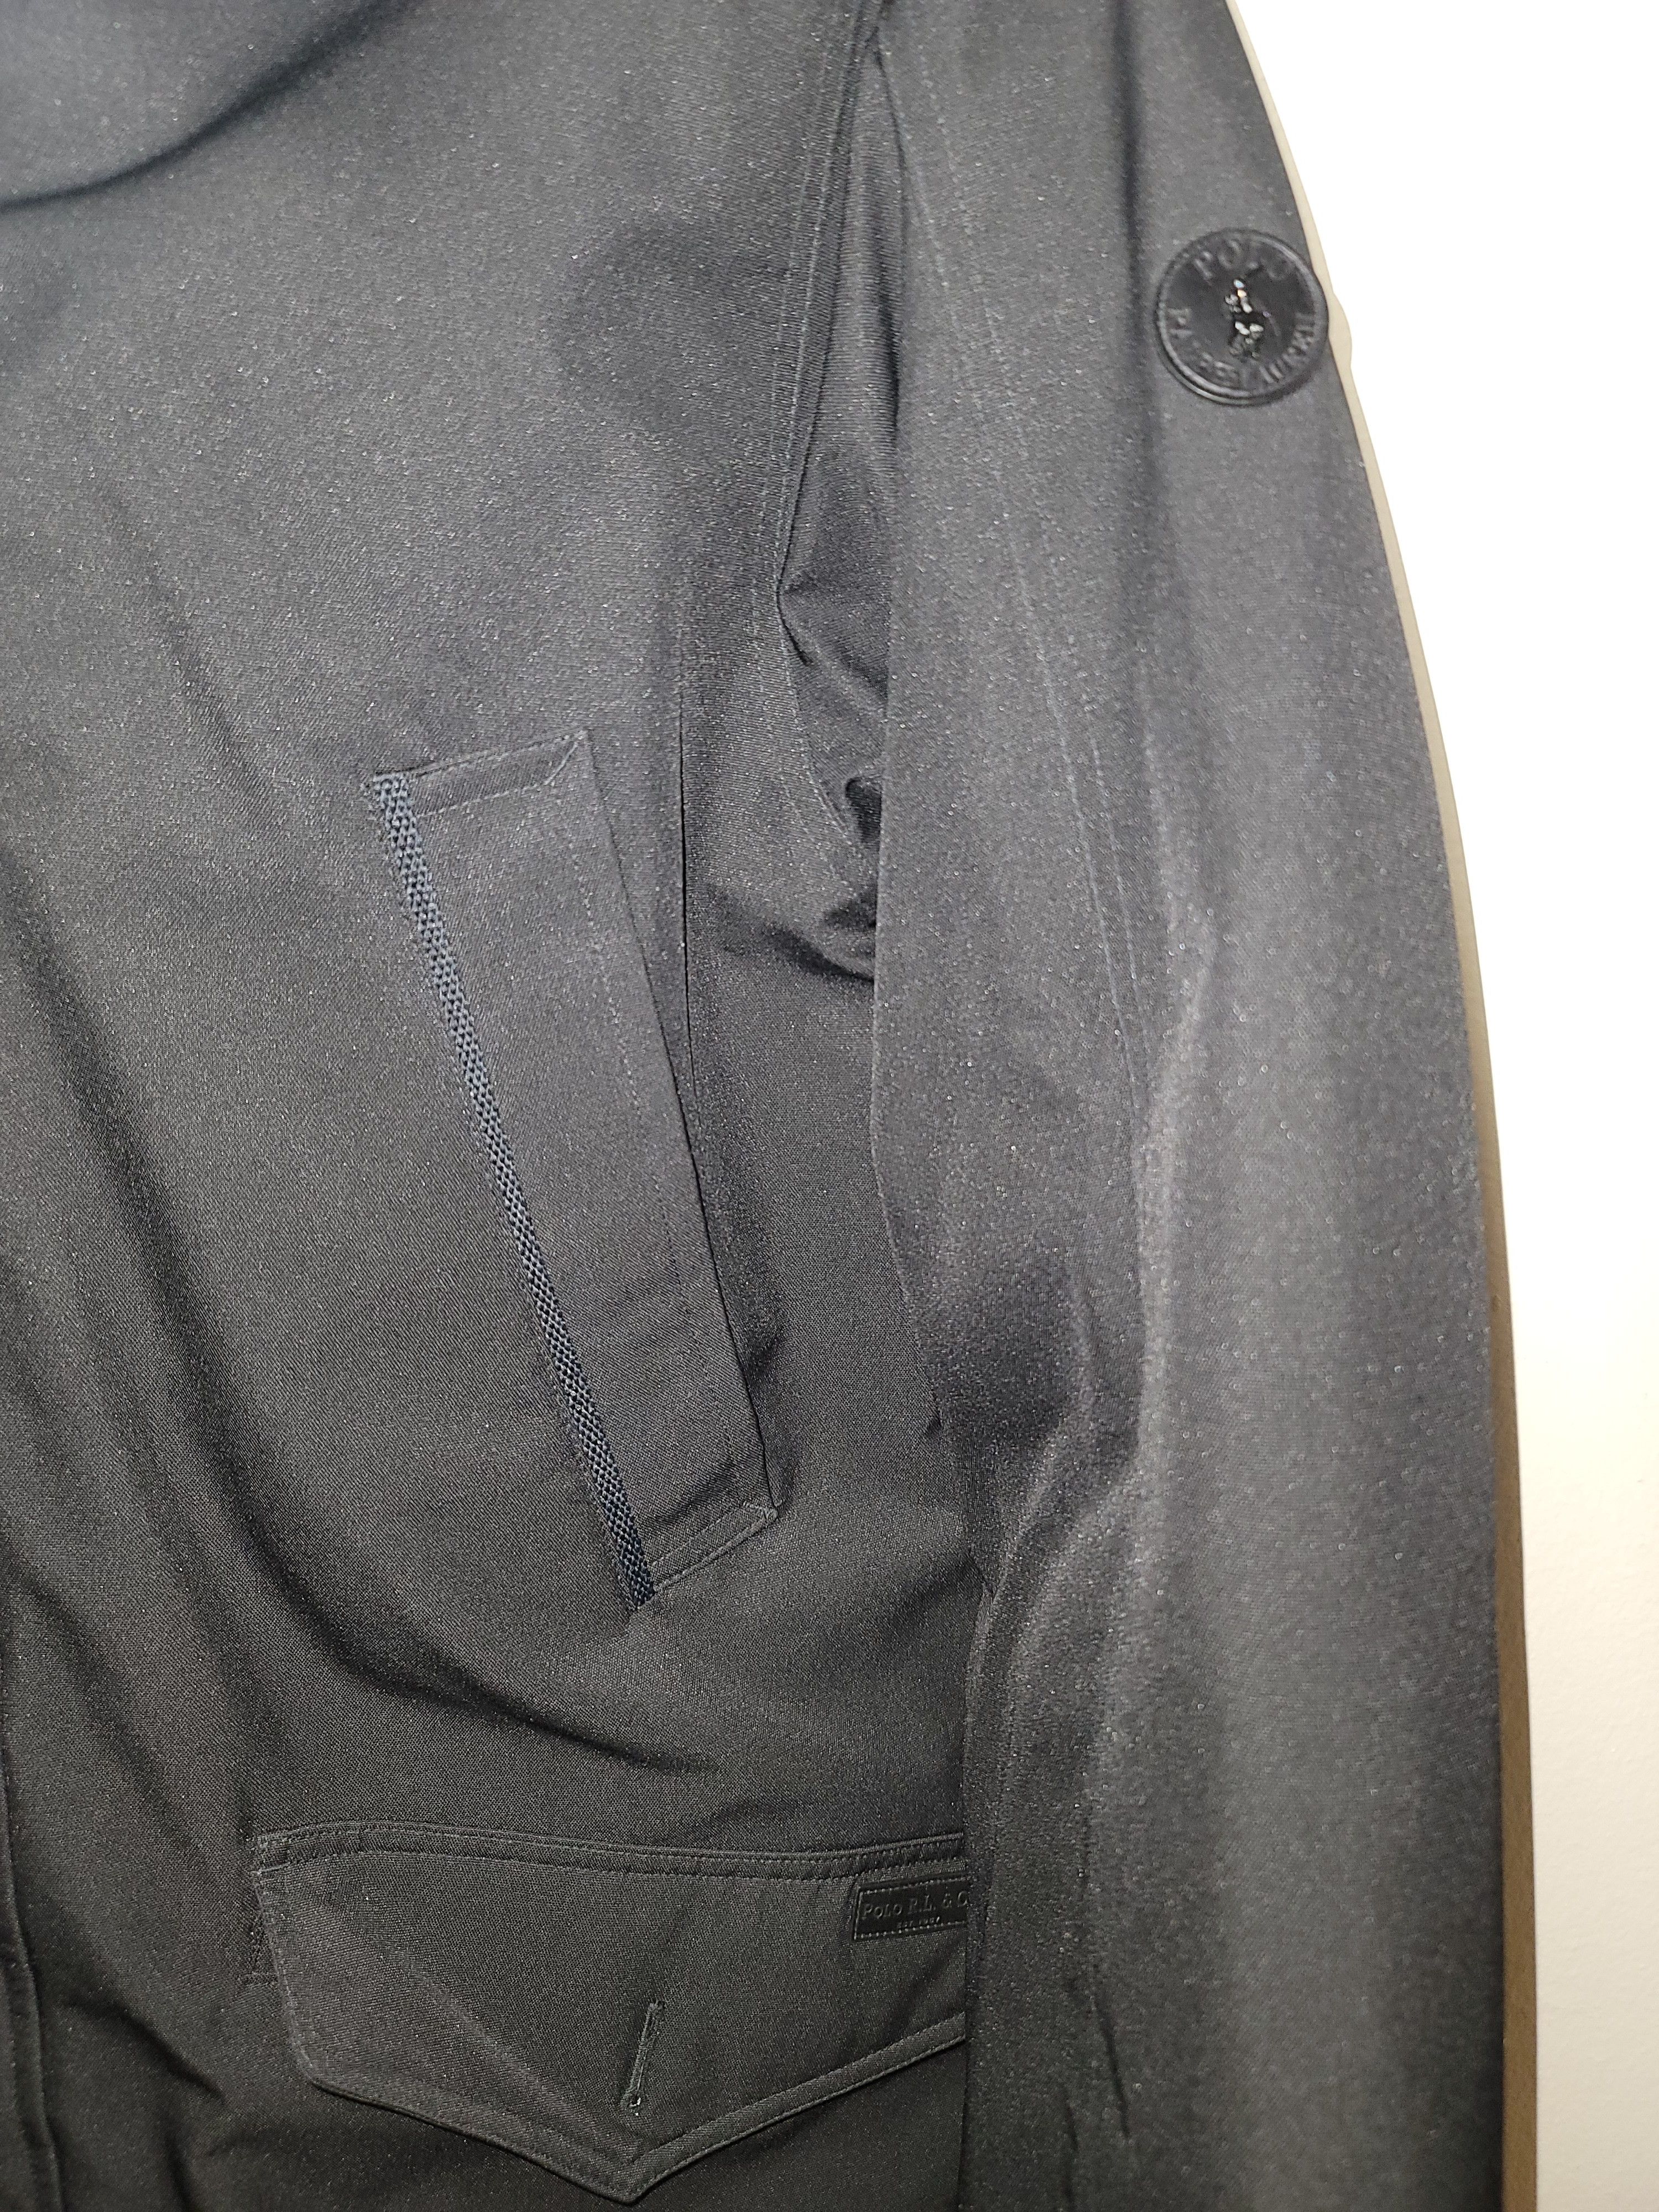 Polo Ralph Lauren Performance Water Repellent Down Parka Jacket Size US L / EU 52-54 / 3 - 3 Thumbnail